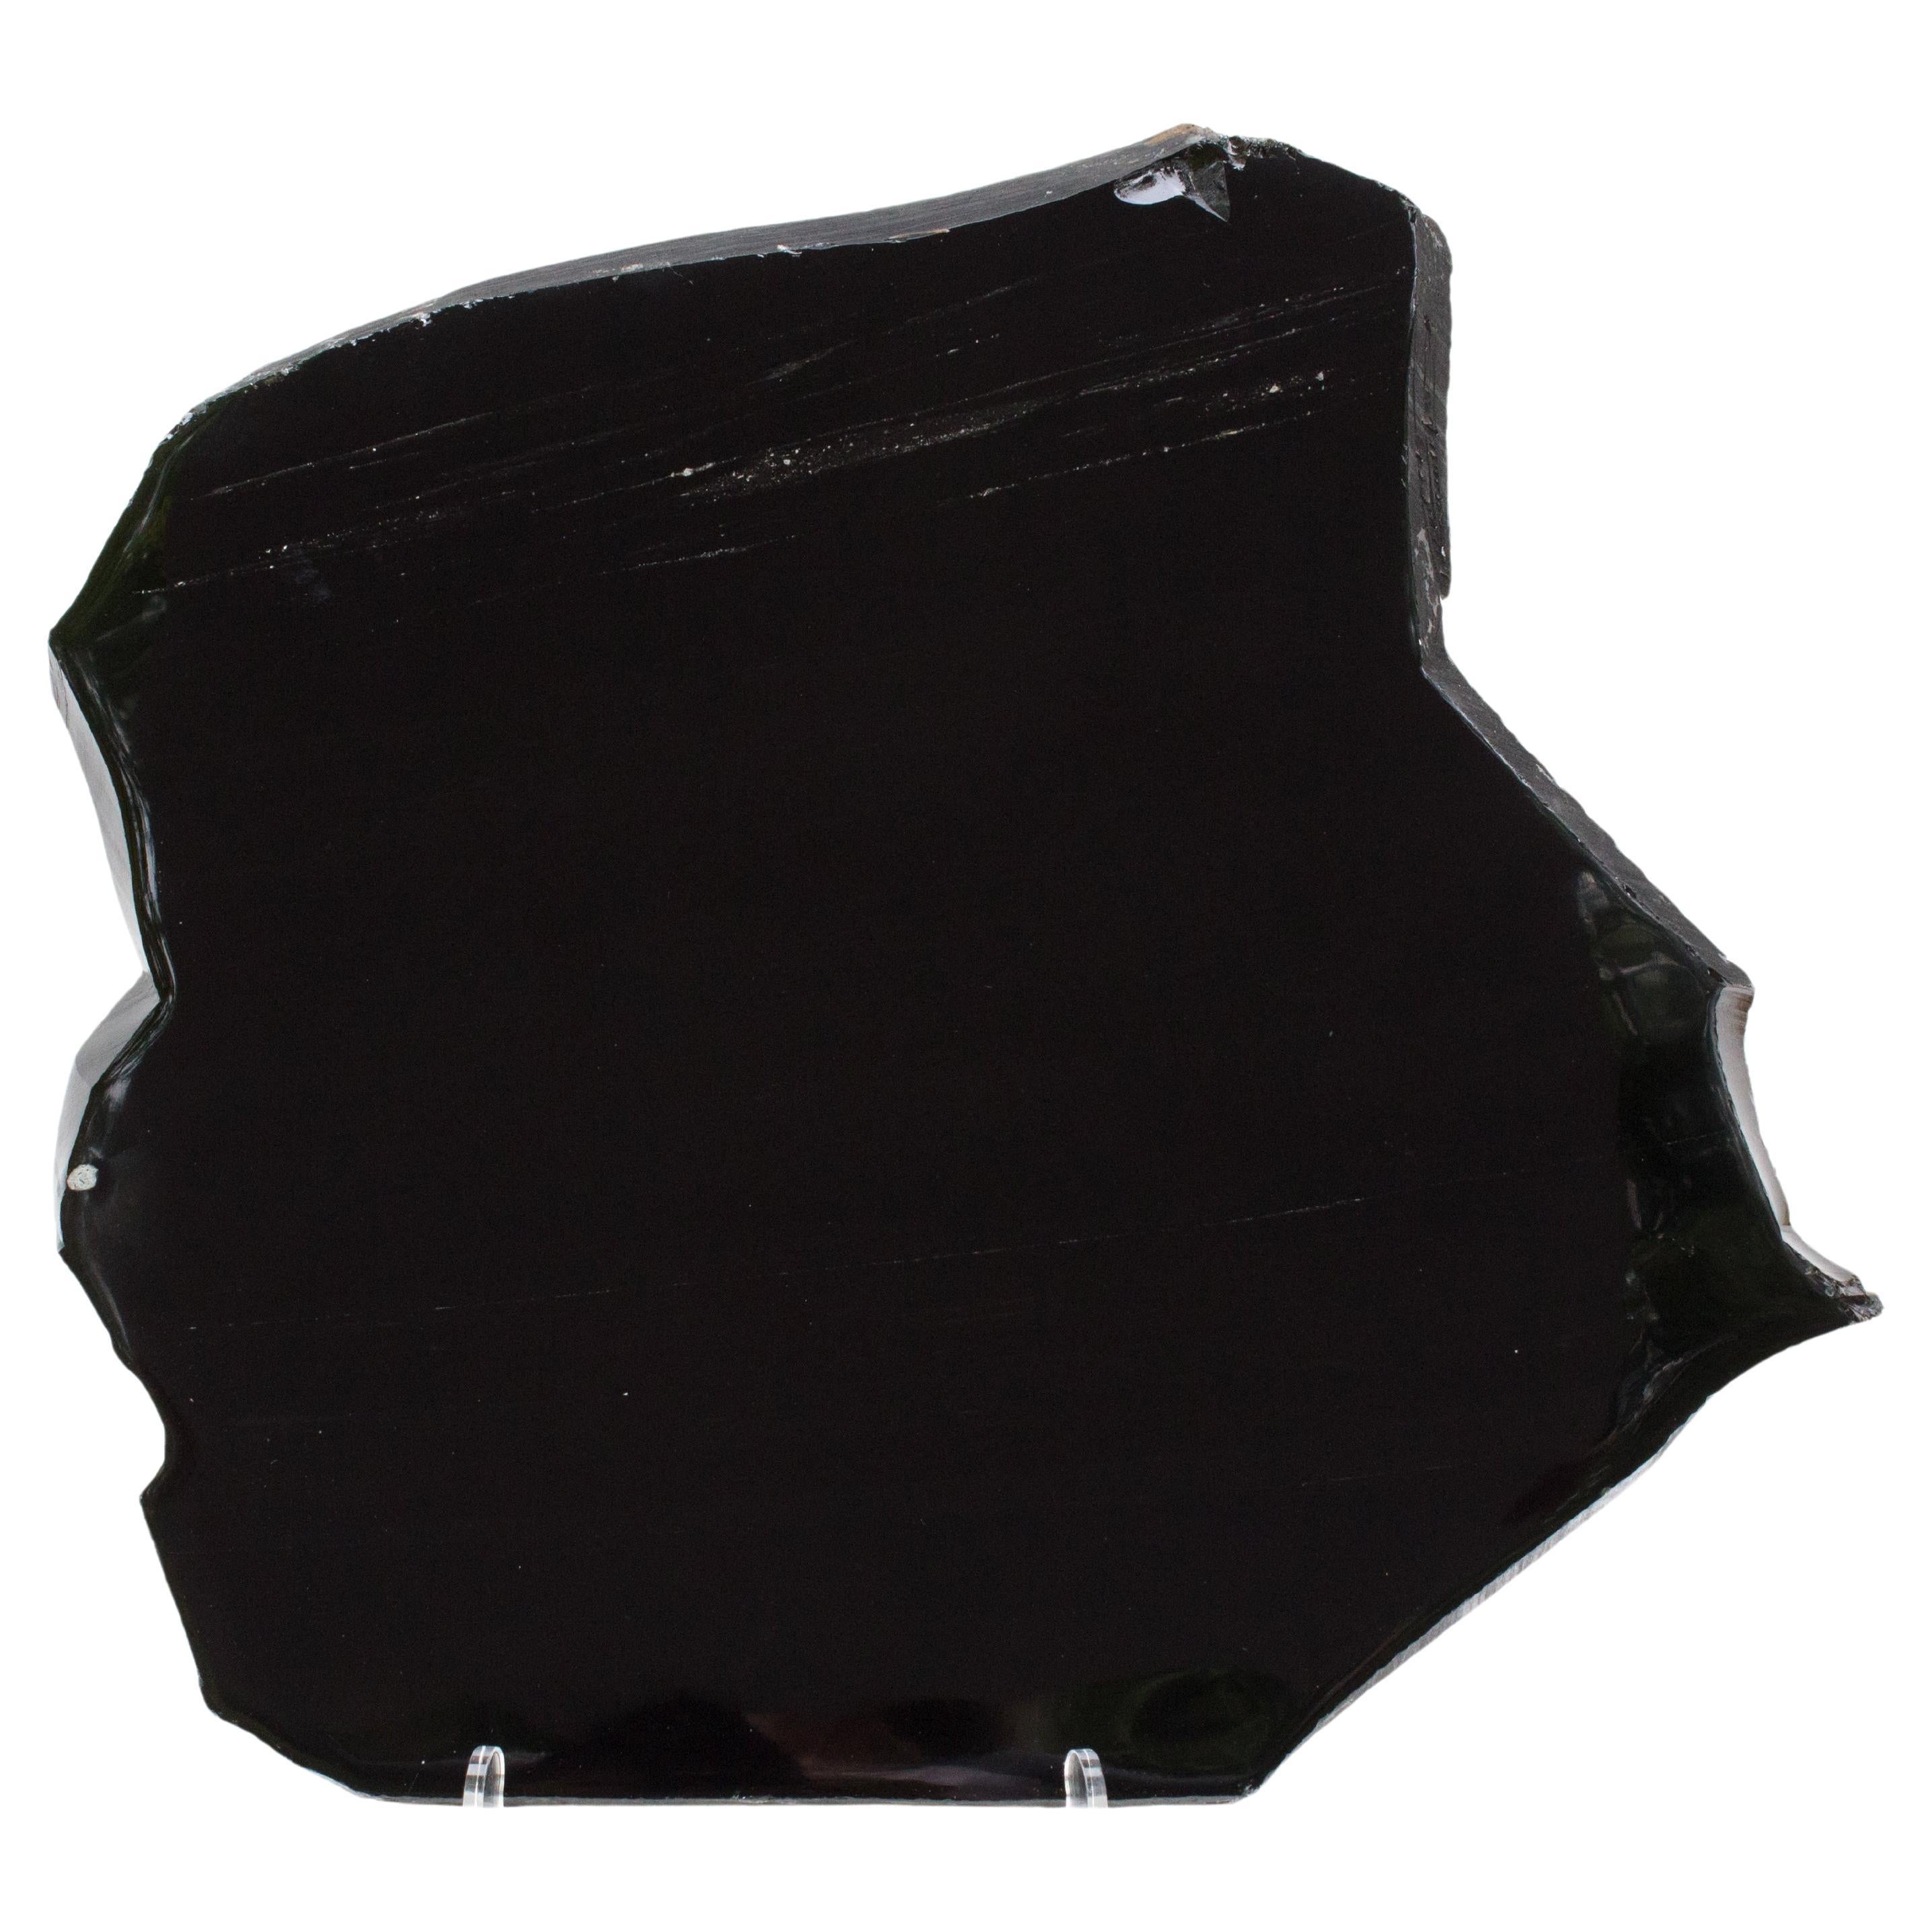 Polished Black Obsidian Mirror